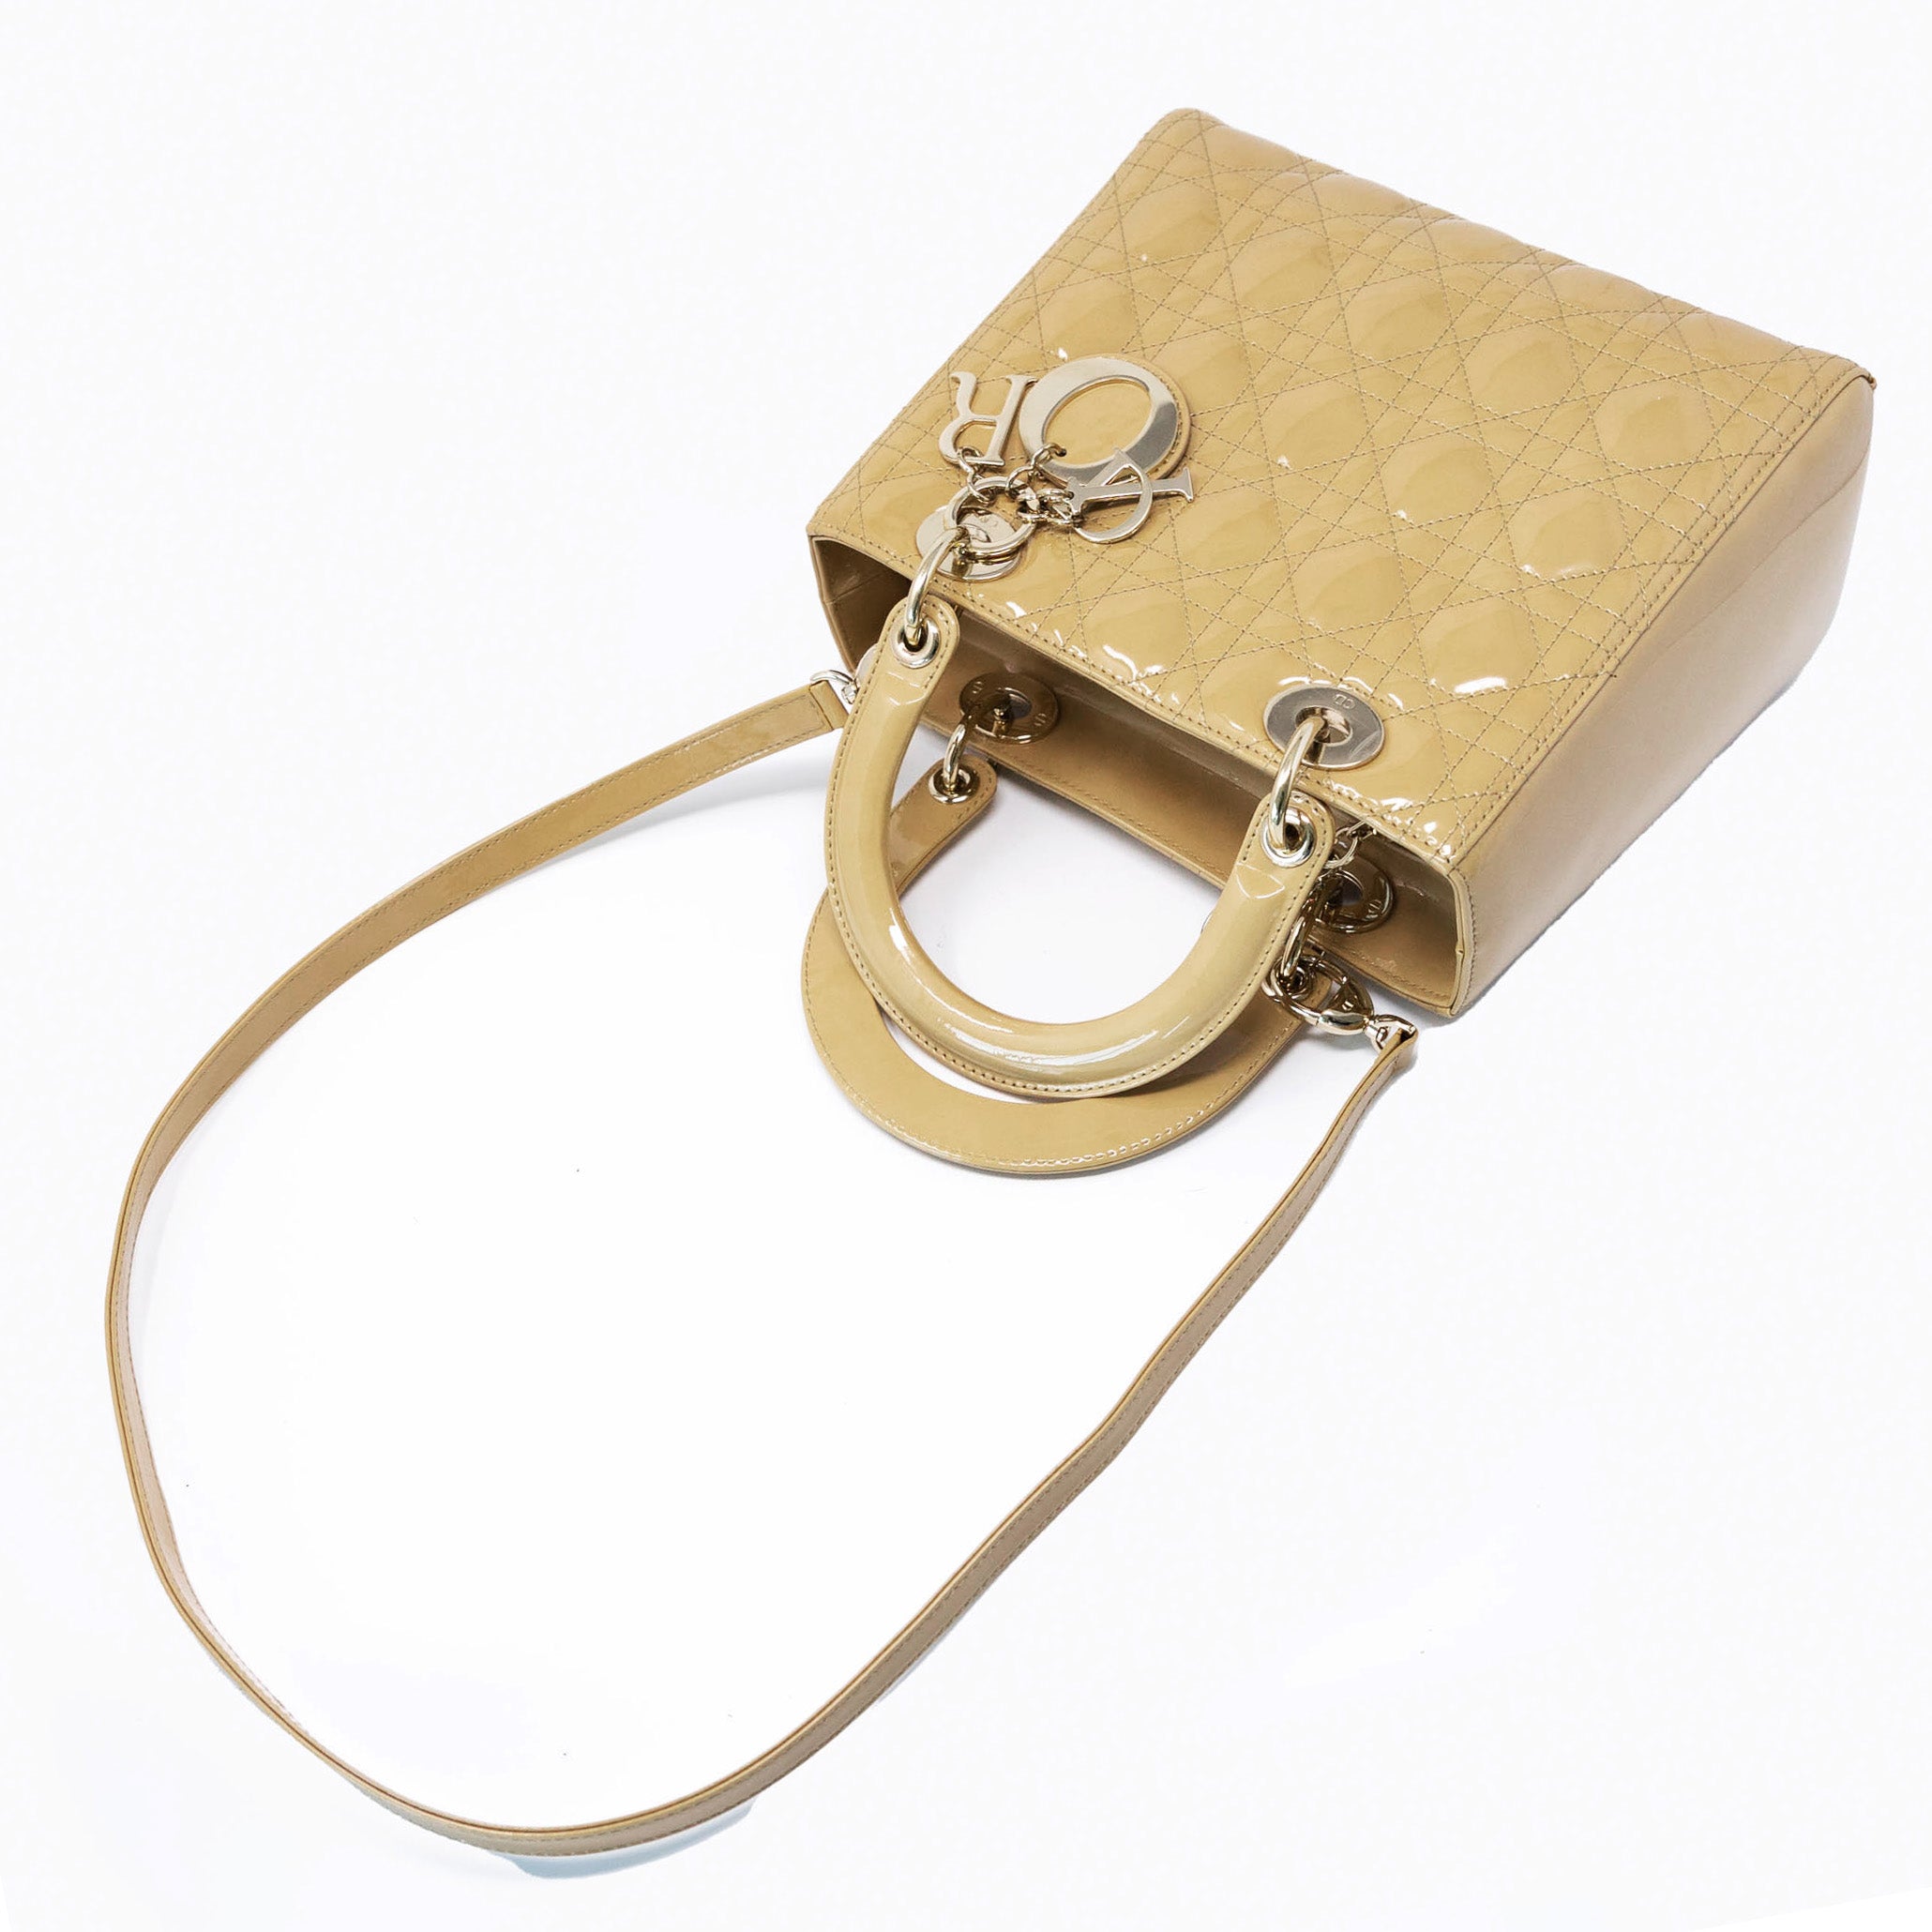 Dior Beige Patent Medium Lady Dior Bag